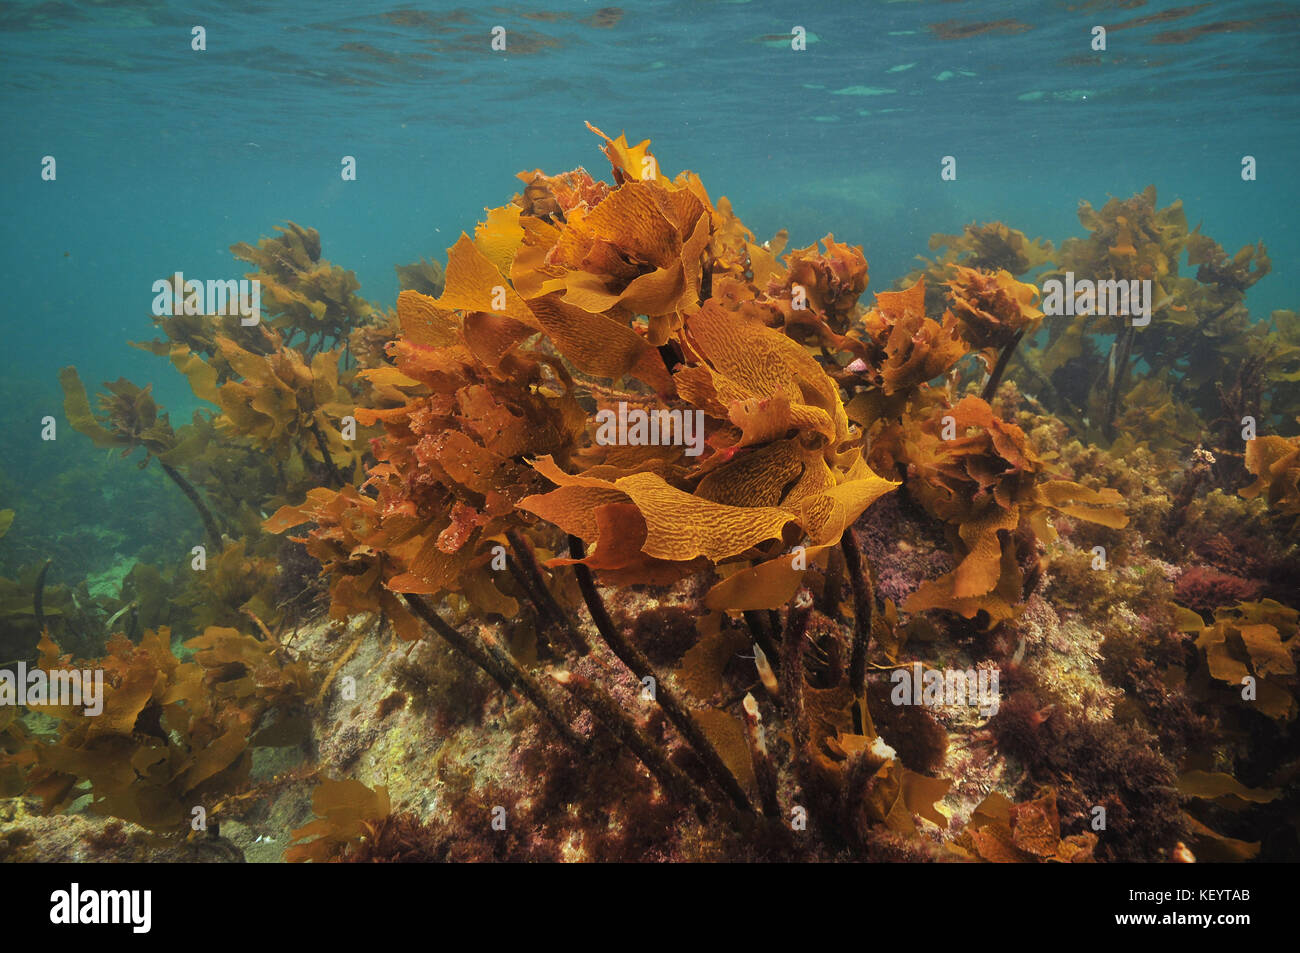 Marrone lucido sgambate kelp ecklonia radiata crescono sulle rocce a destra sotto la superficie dell'oceano. Foto Stock